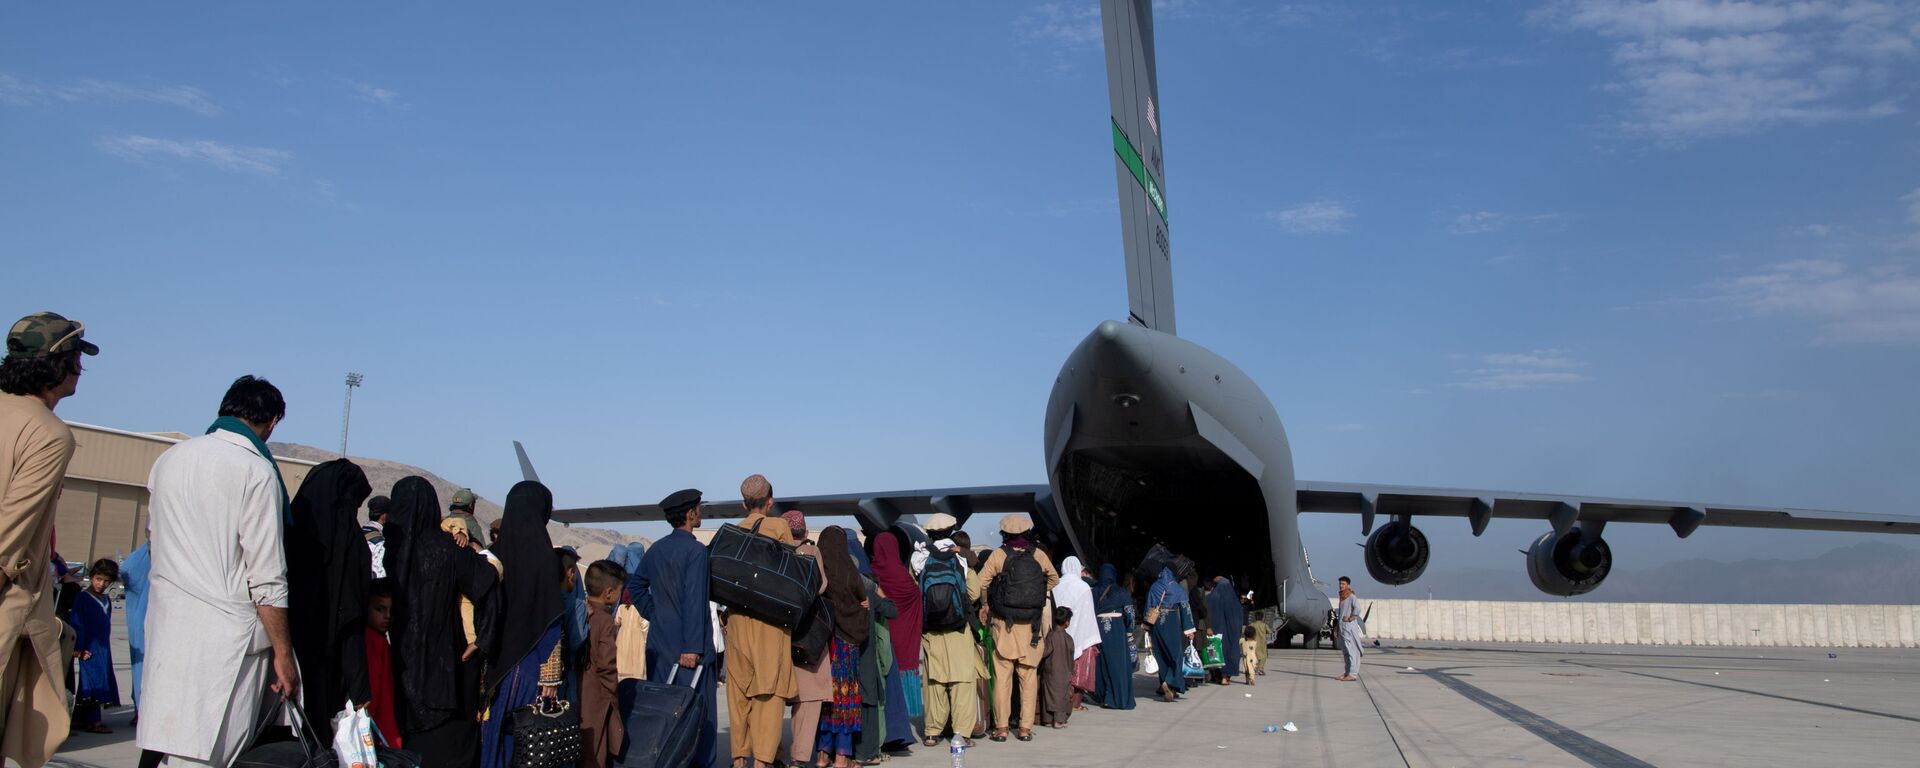 عمليات إجلاء أجانب وأفغان من مطار كابول بعد سيطرة حركة طالبان على الحكم - سبوتنيك عربي, 1920, 26.08.2021